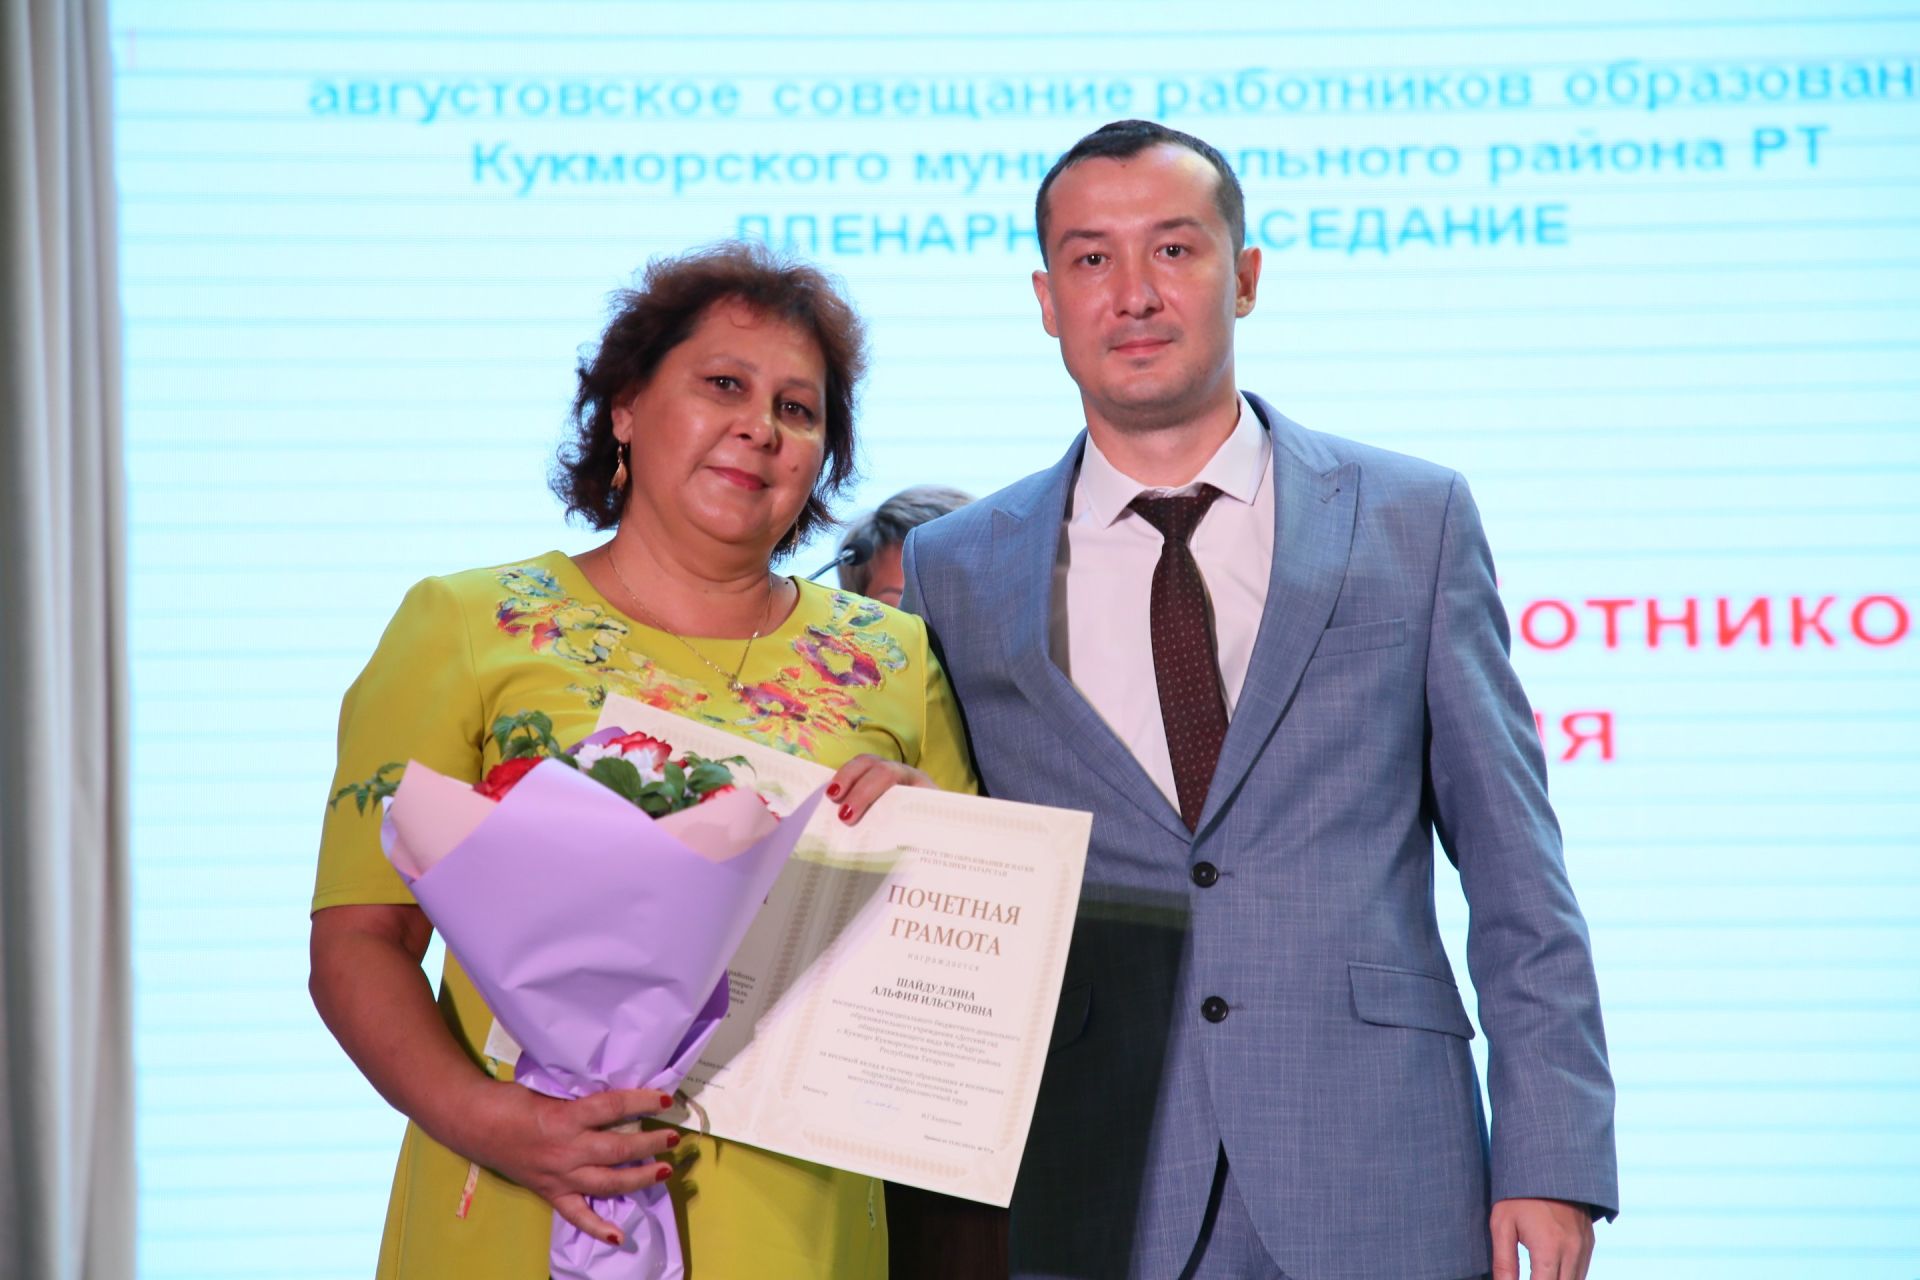 Сергей Димитриев на «августовке»: Каждый ребенок должен иметь возможность получить достойное образование